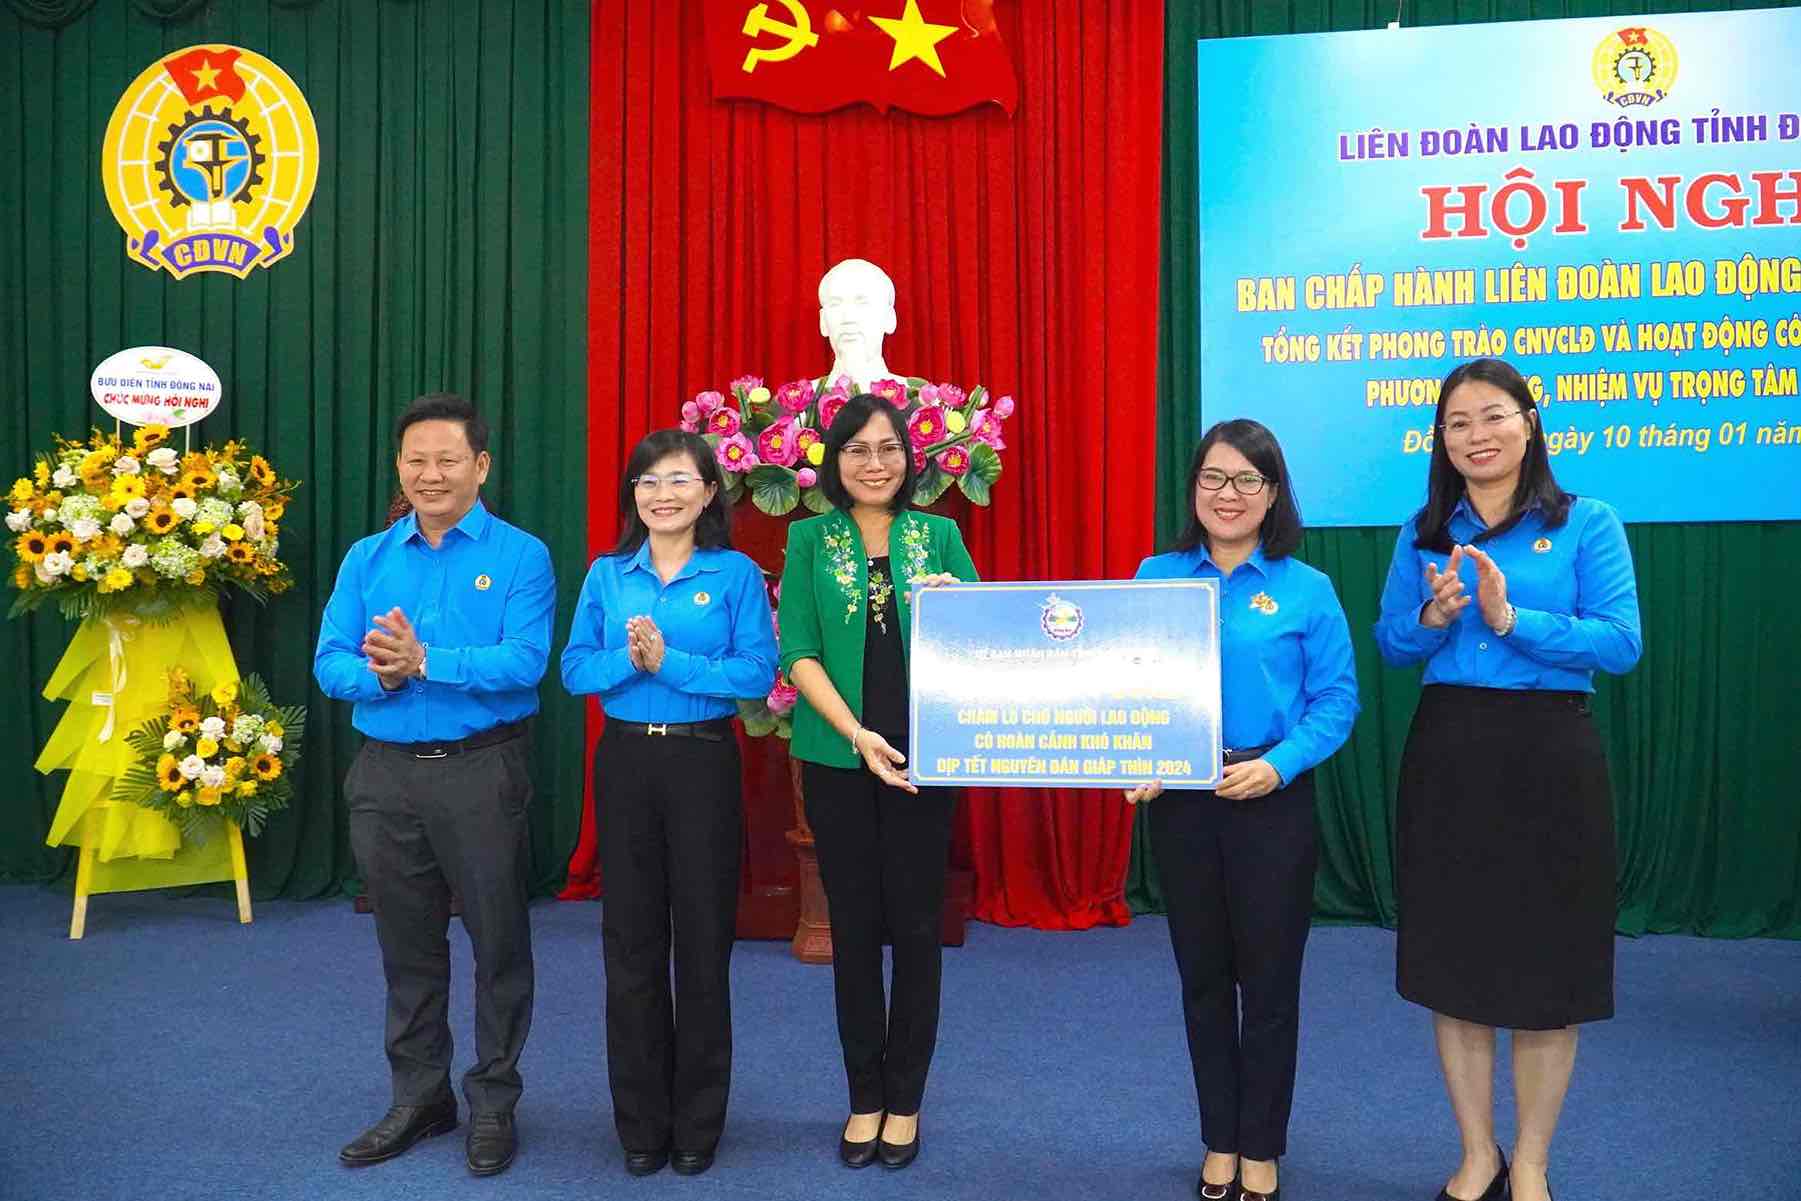 Bà Nguyễn Thị Hoàng - Phó chủ tịch UBND tỉnh Đồng Nai (ở giữa) trao số tiền 30 tỉ đồng chăm lo Tết cho đoàn viên người lao động. Ảnh: Hà Anh Chiến